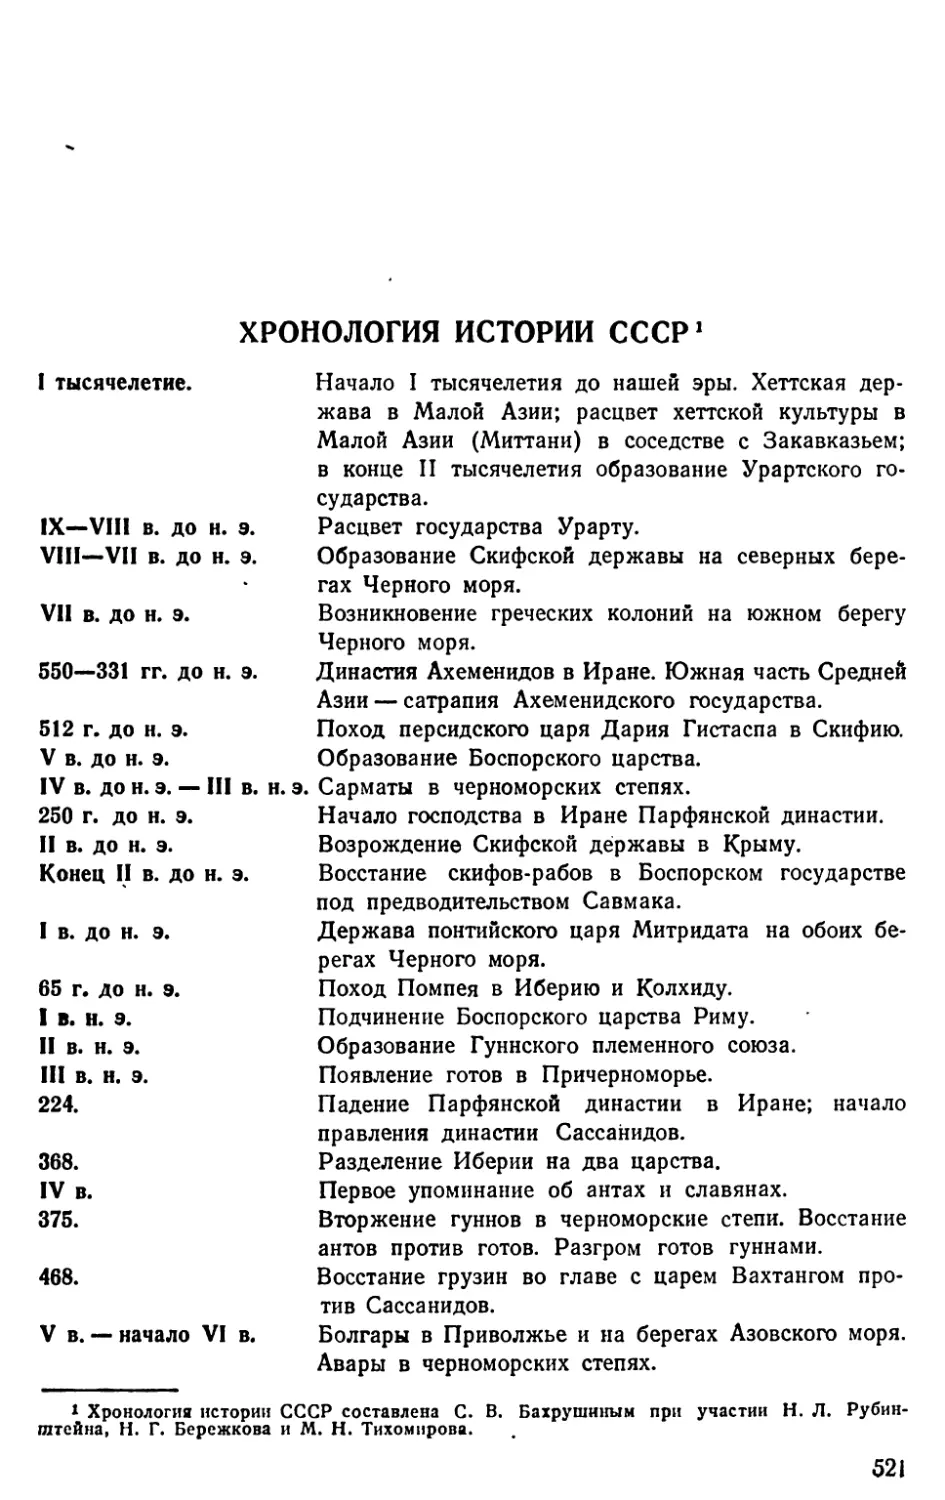 Хронология истории СССР